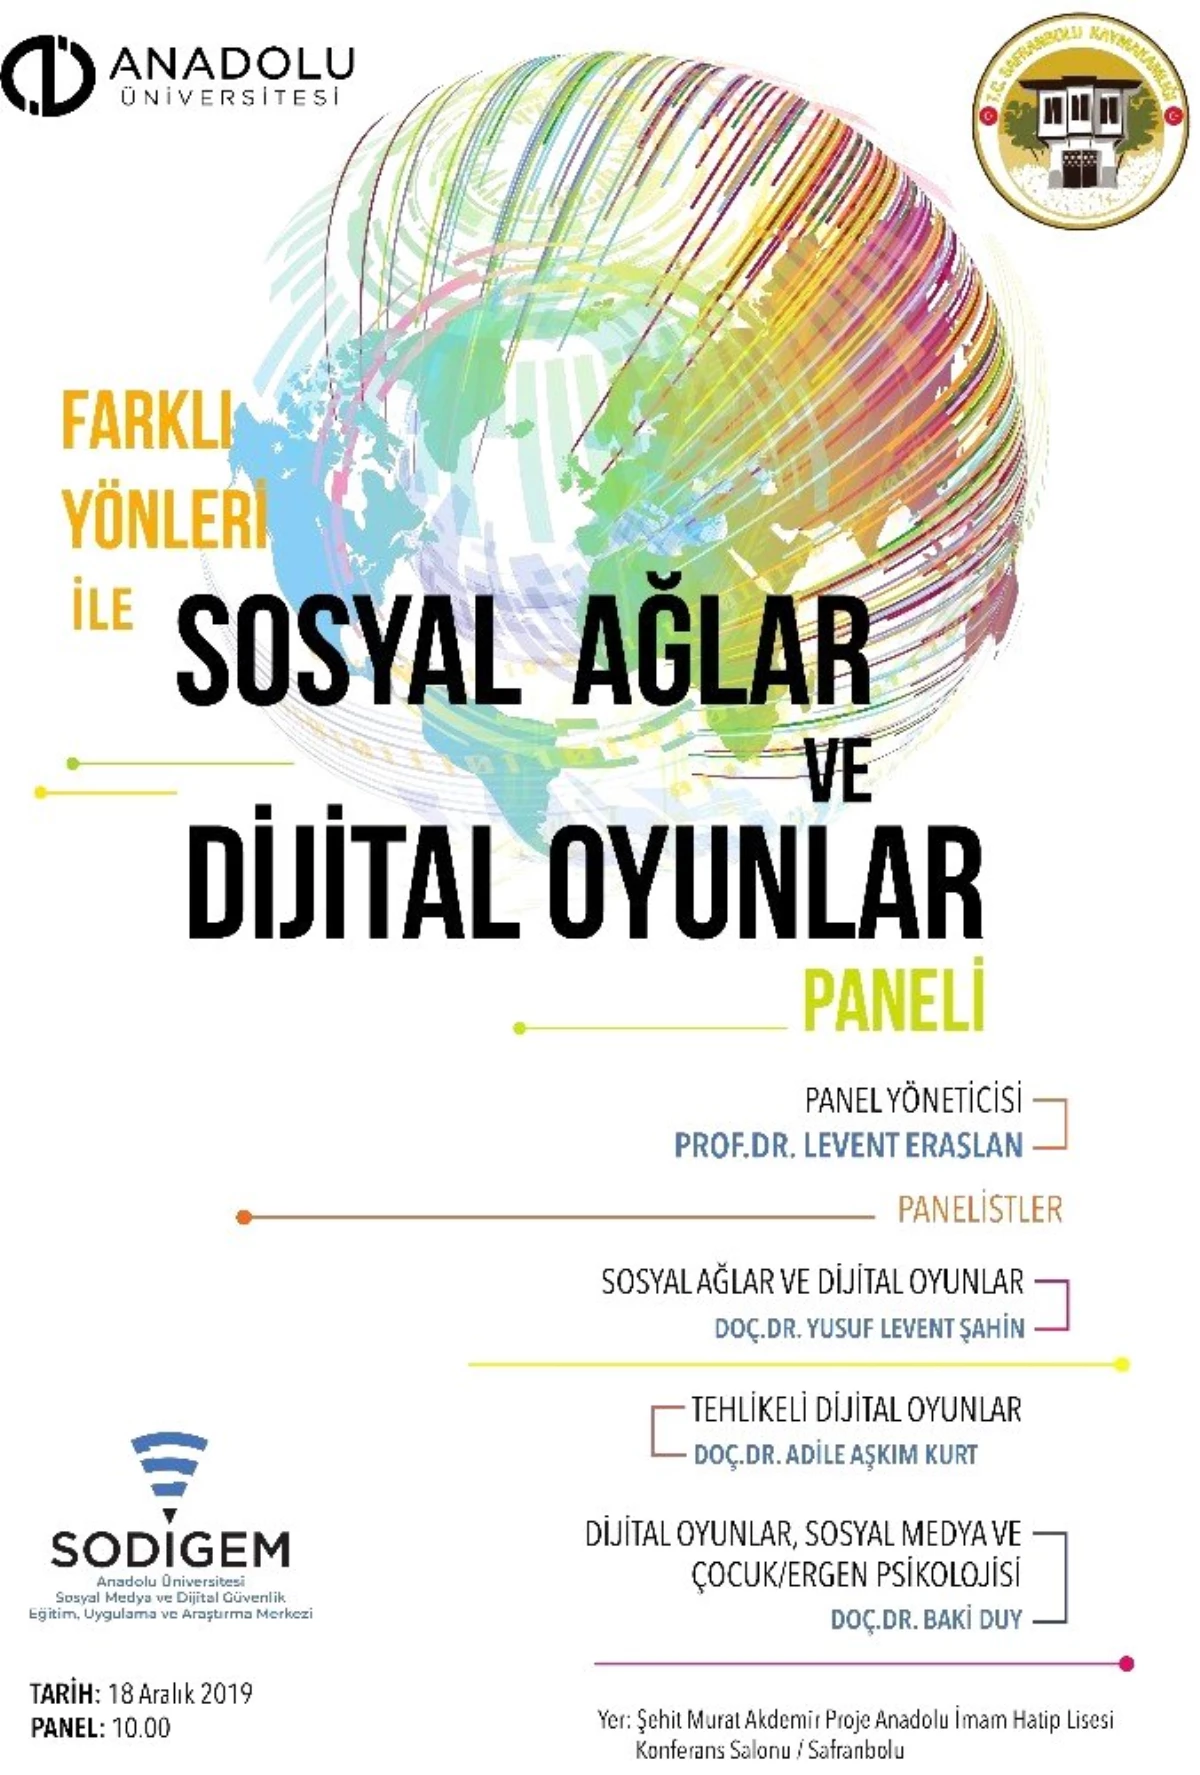 "Farklı Yönleri ile Sosyal Ağlar ve Dijital Oyunlar" paneli